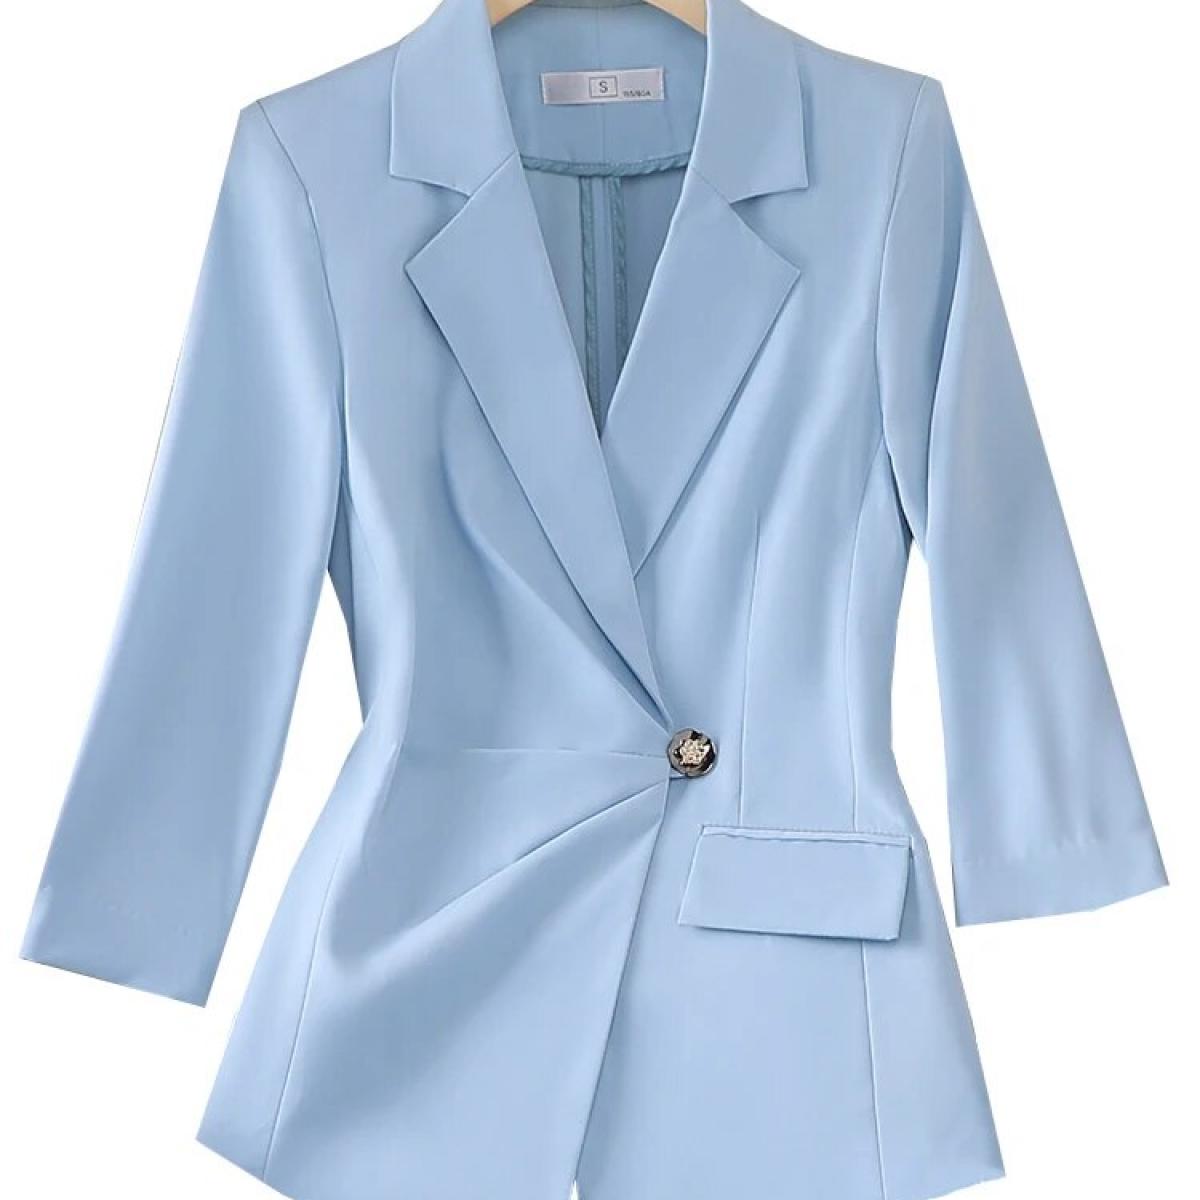 Primavera verão feminino formal blazer senhoras feminino três quartos manga sólida jaqueta casaco para negócios trabalho wear